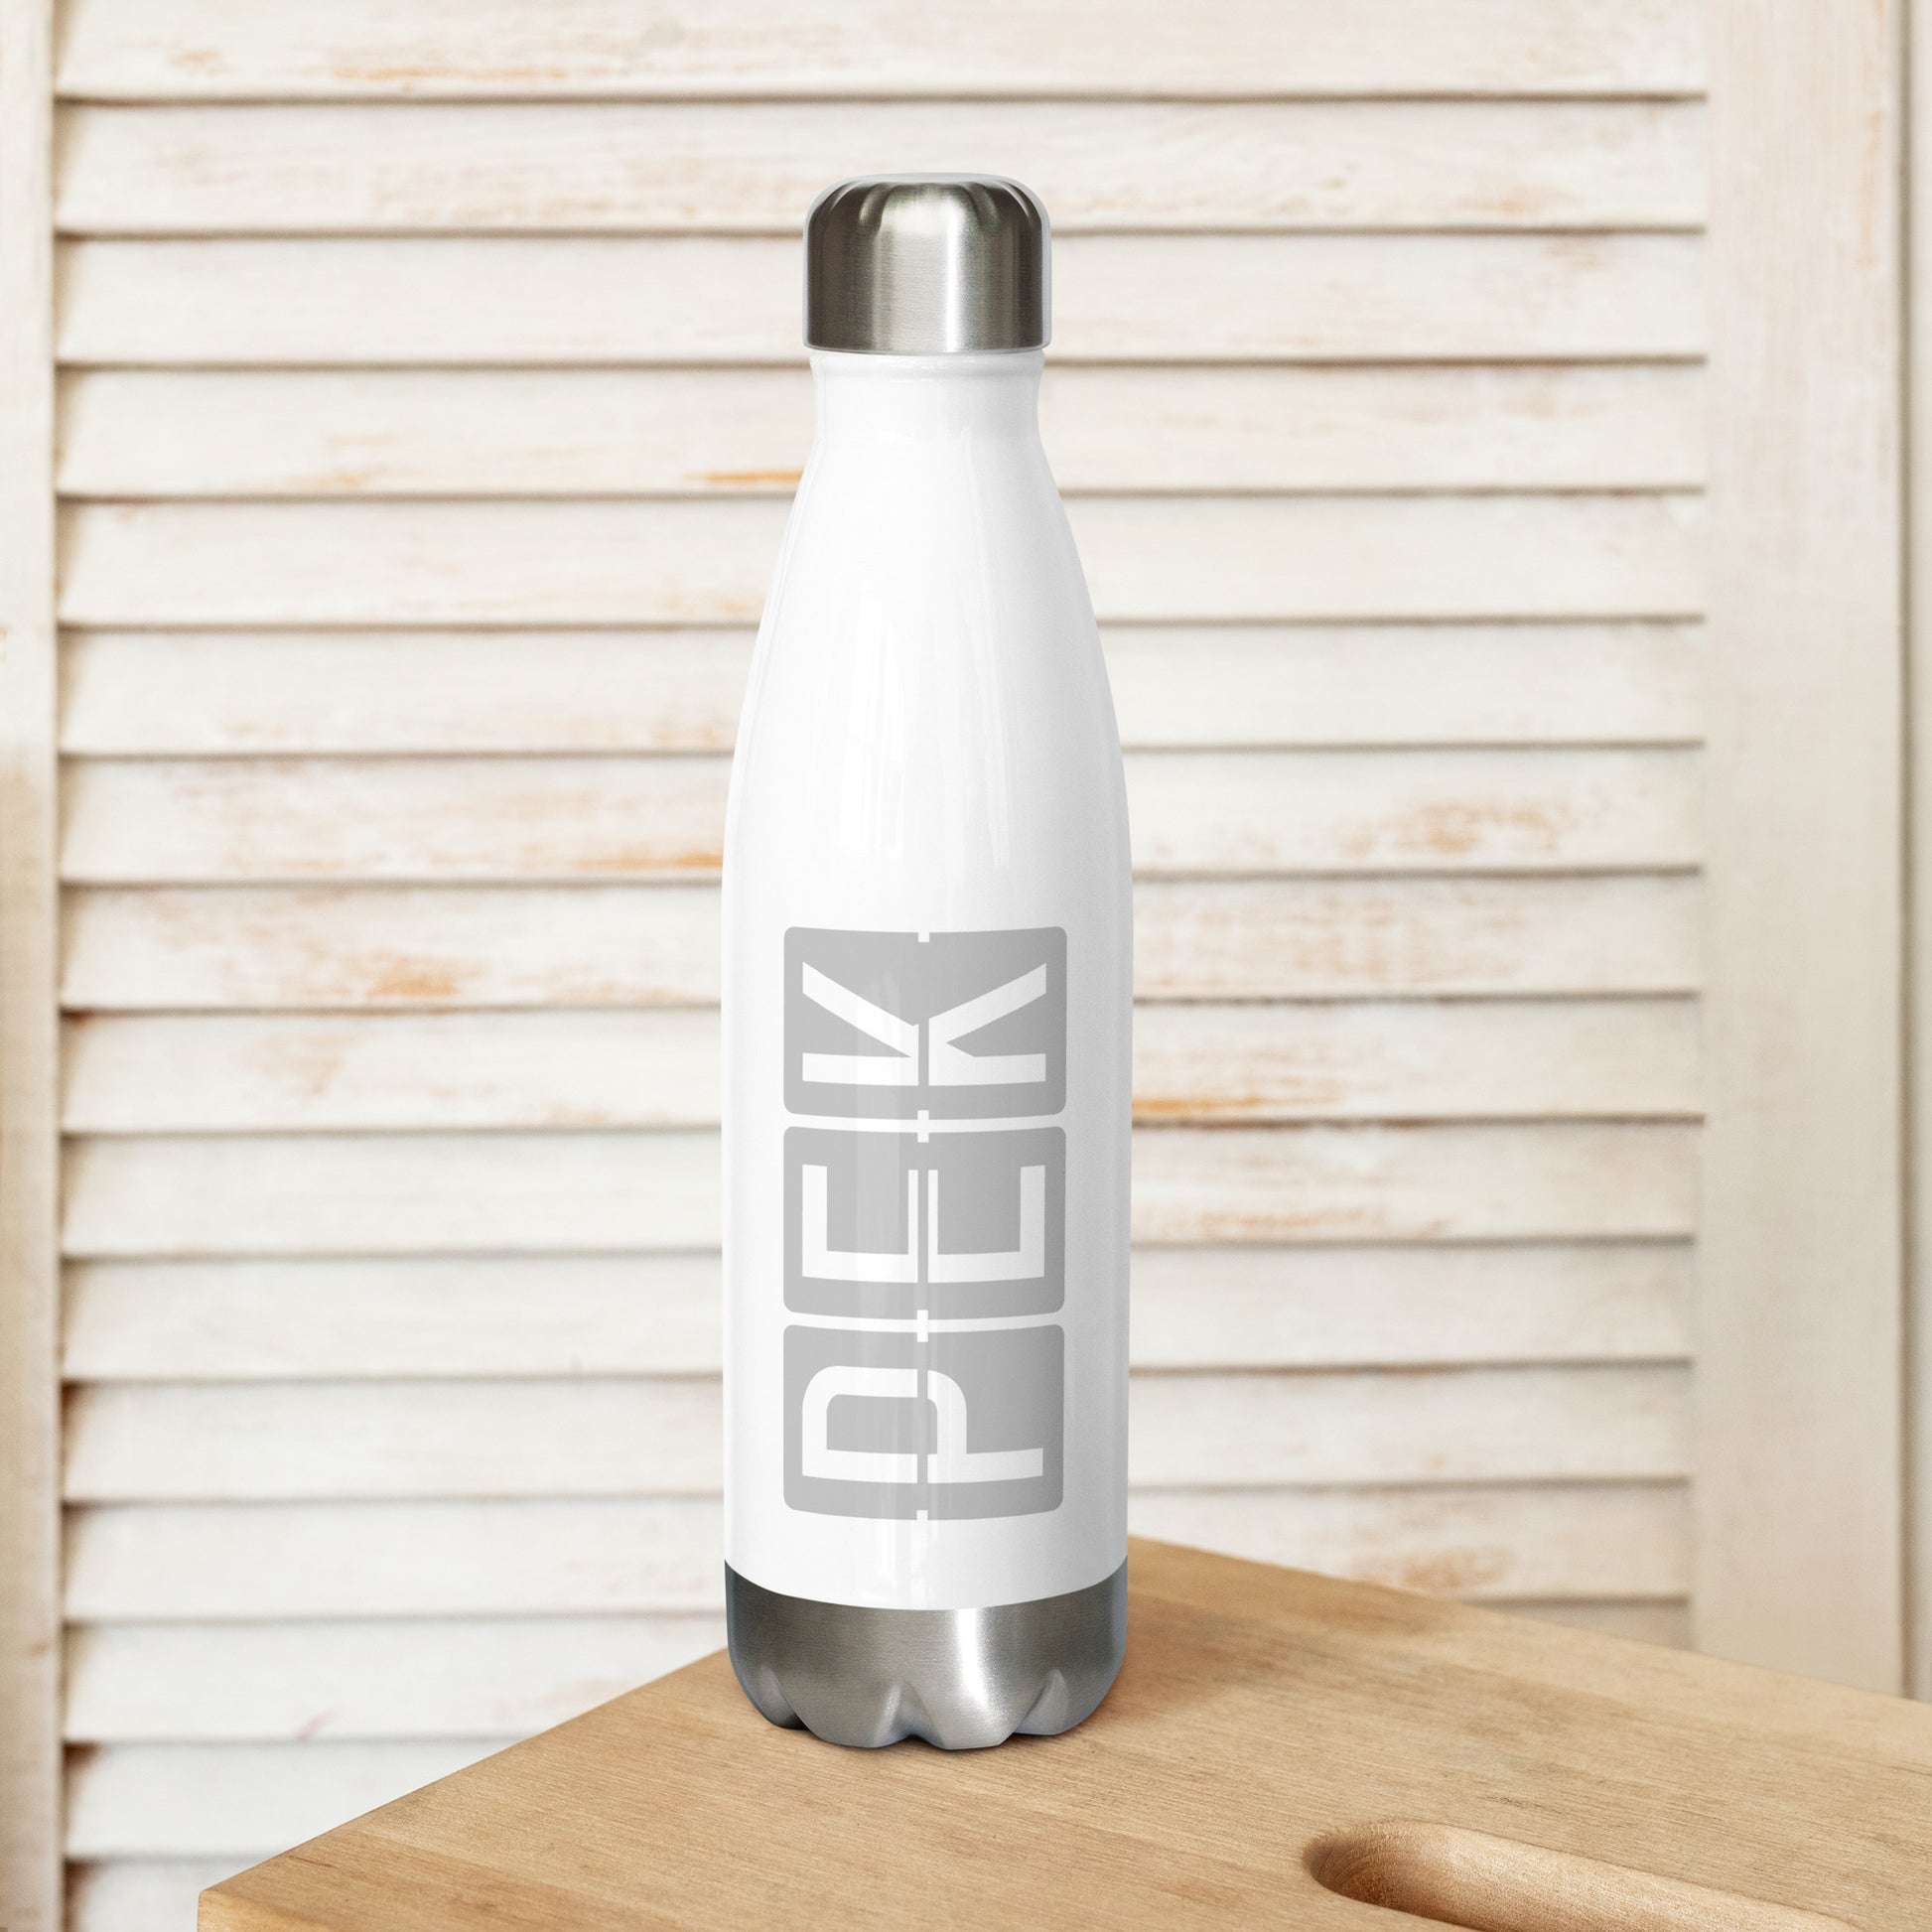 Split-Flap Water Bottle - Grey • PEK Beijing • YHM Designs - Image 02